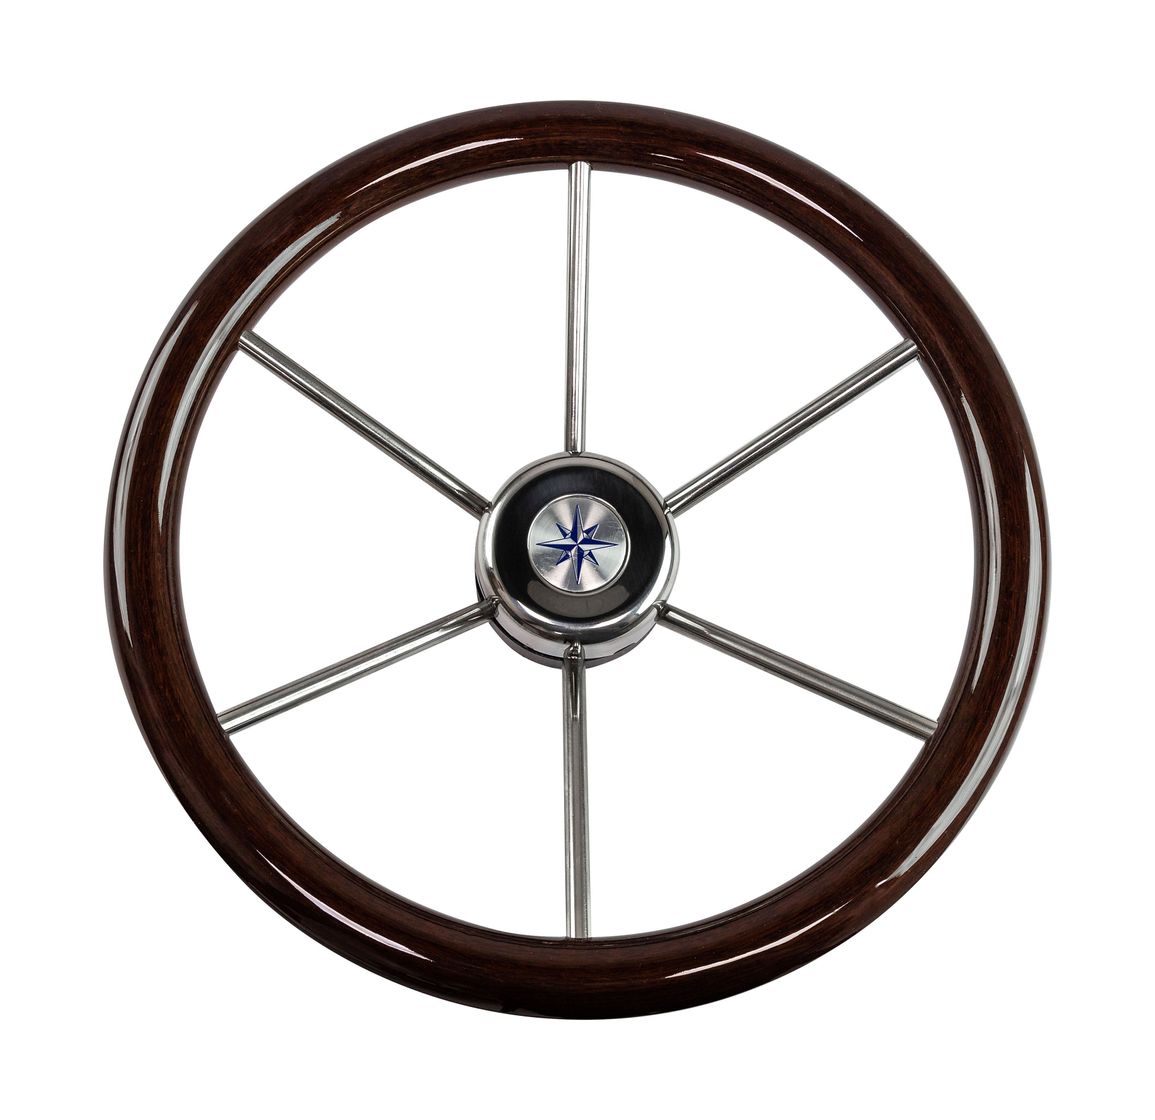 Рулевое колесо LEADER WOOD PLUS деревянный обод серебряные спицы д. 390 мм купить c доставкой